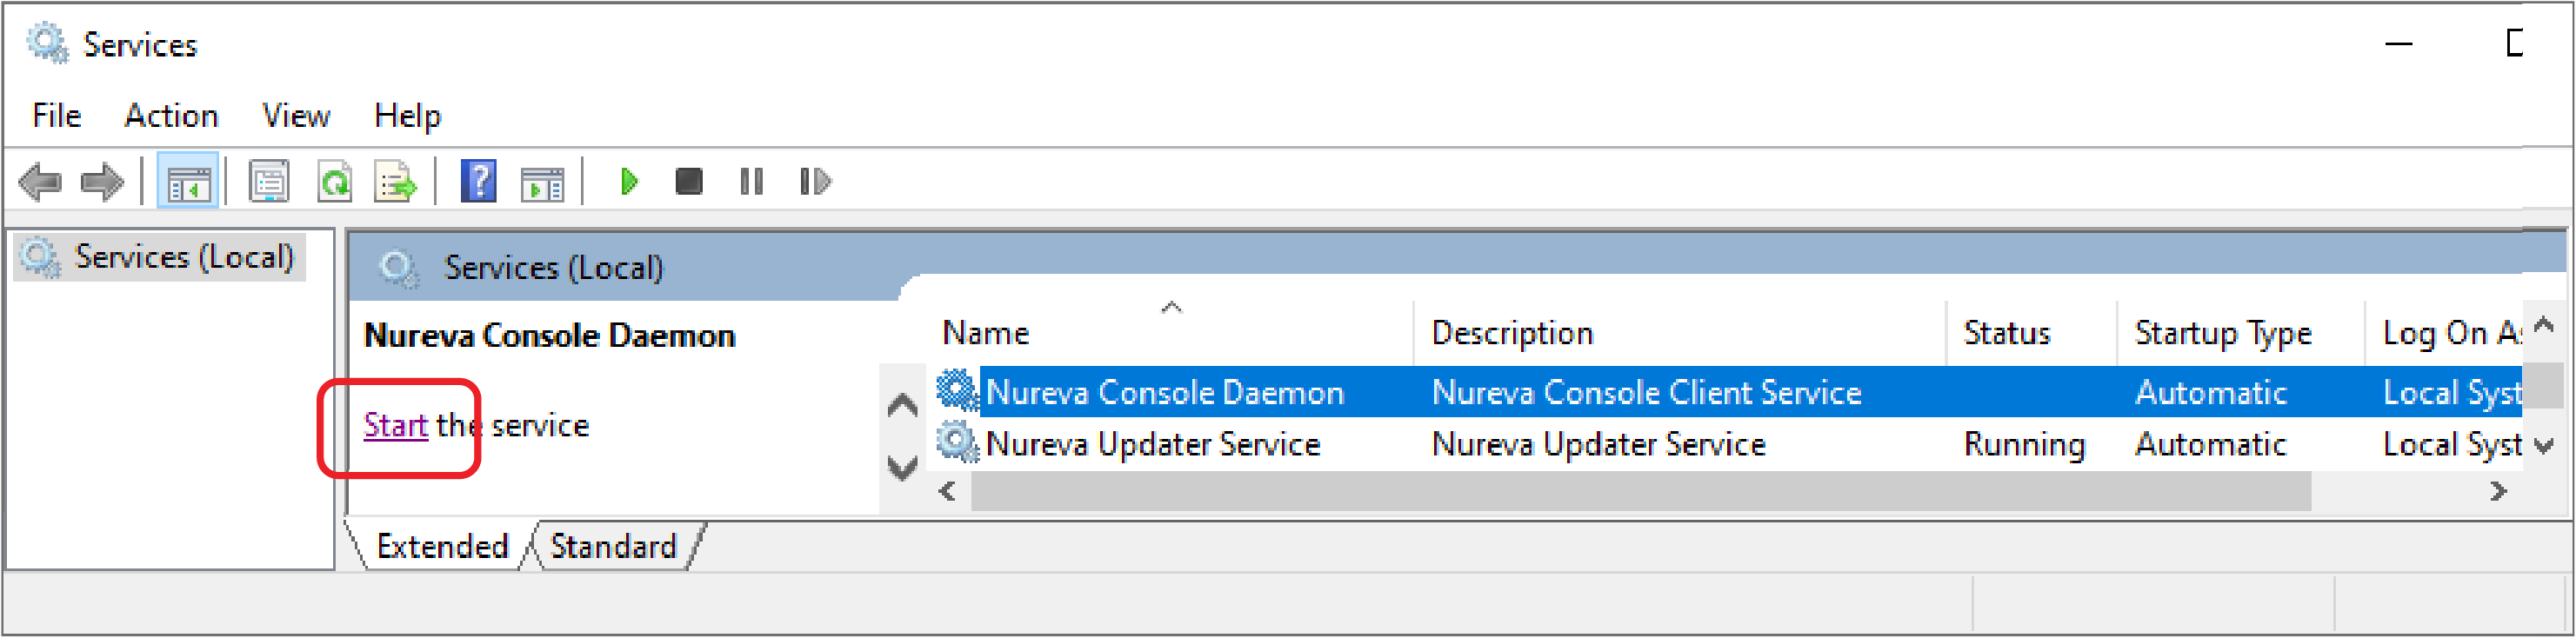 Start Nureva Console Daemonient stopped responding